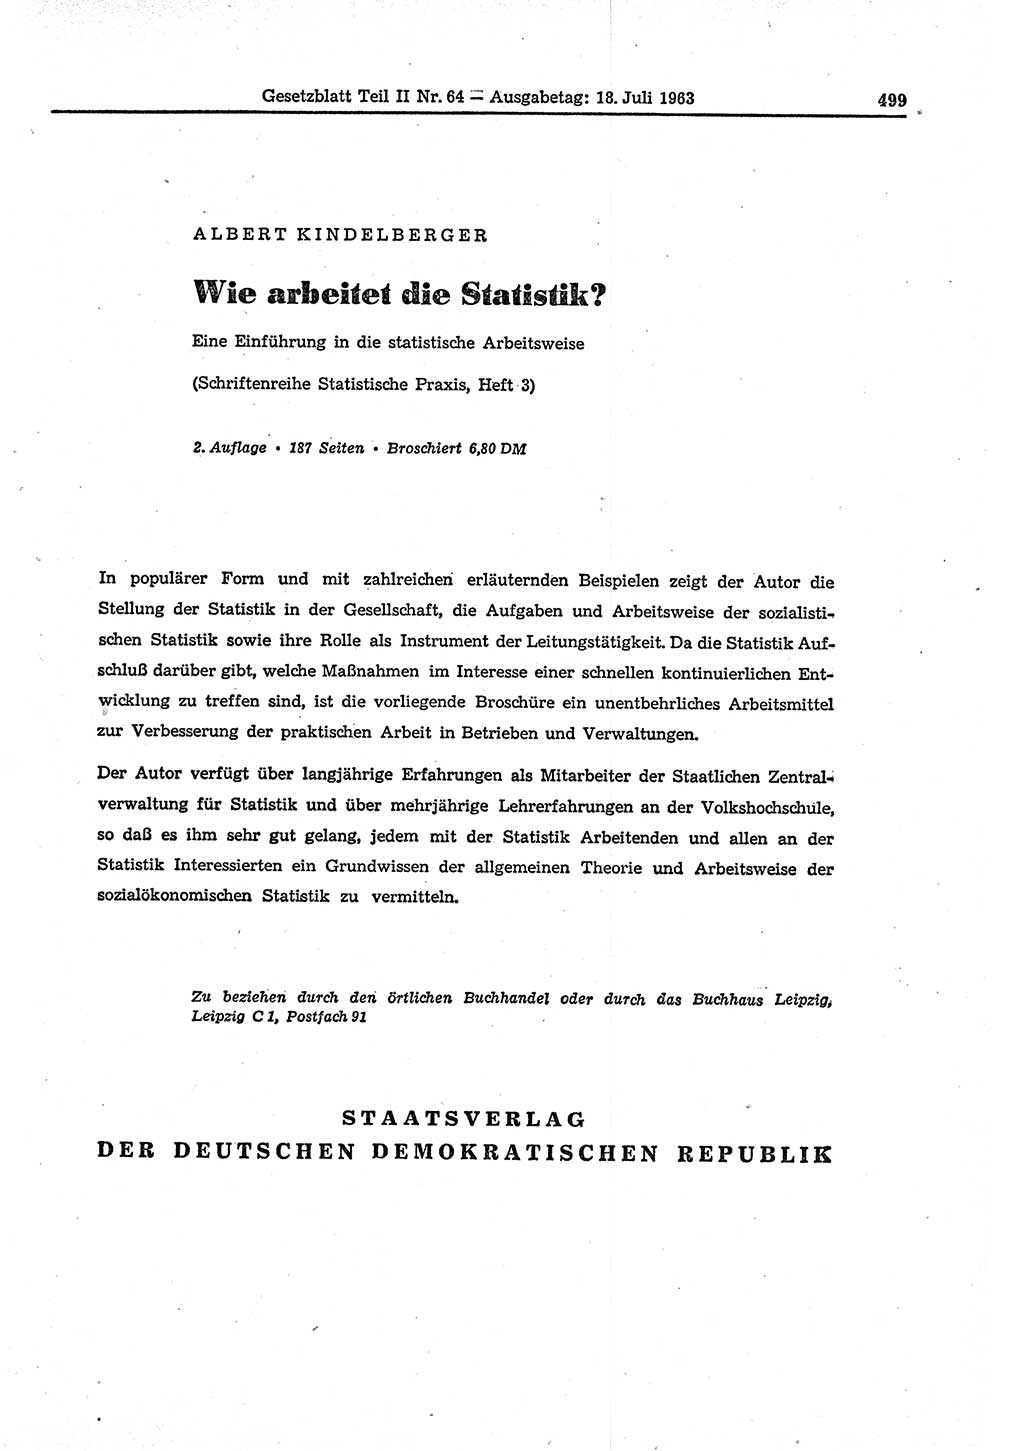 Gesetzblatt (GBl.) der Deutschen Demokratischen Republik (DDR) Teil ⅠⅠ 1963, Seite 499 (GBl. DDR ⅠⅠ 1963, S. 499)